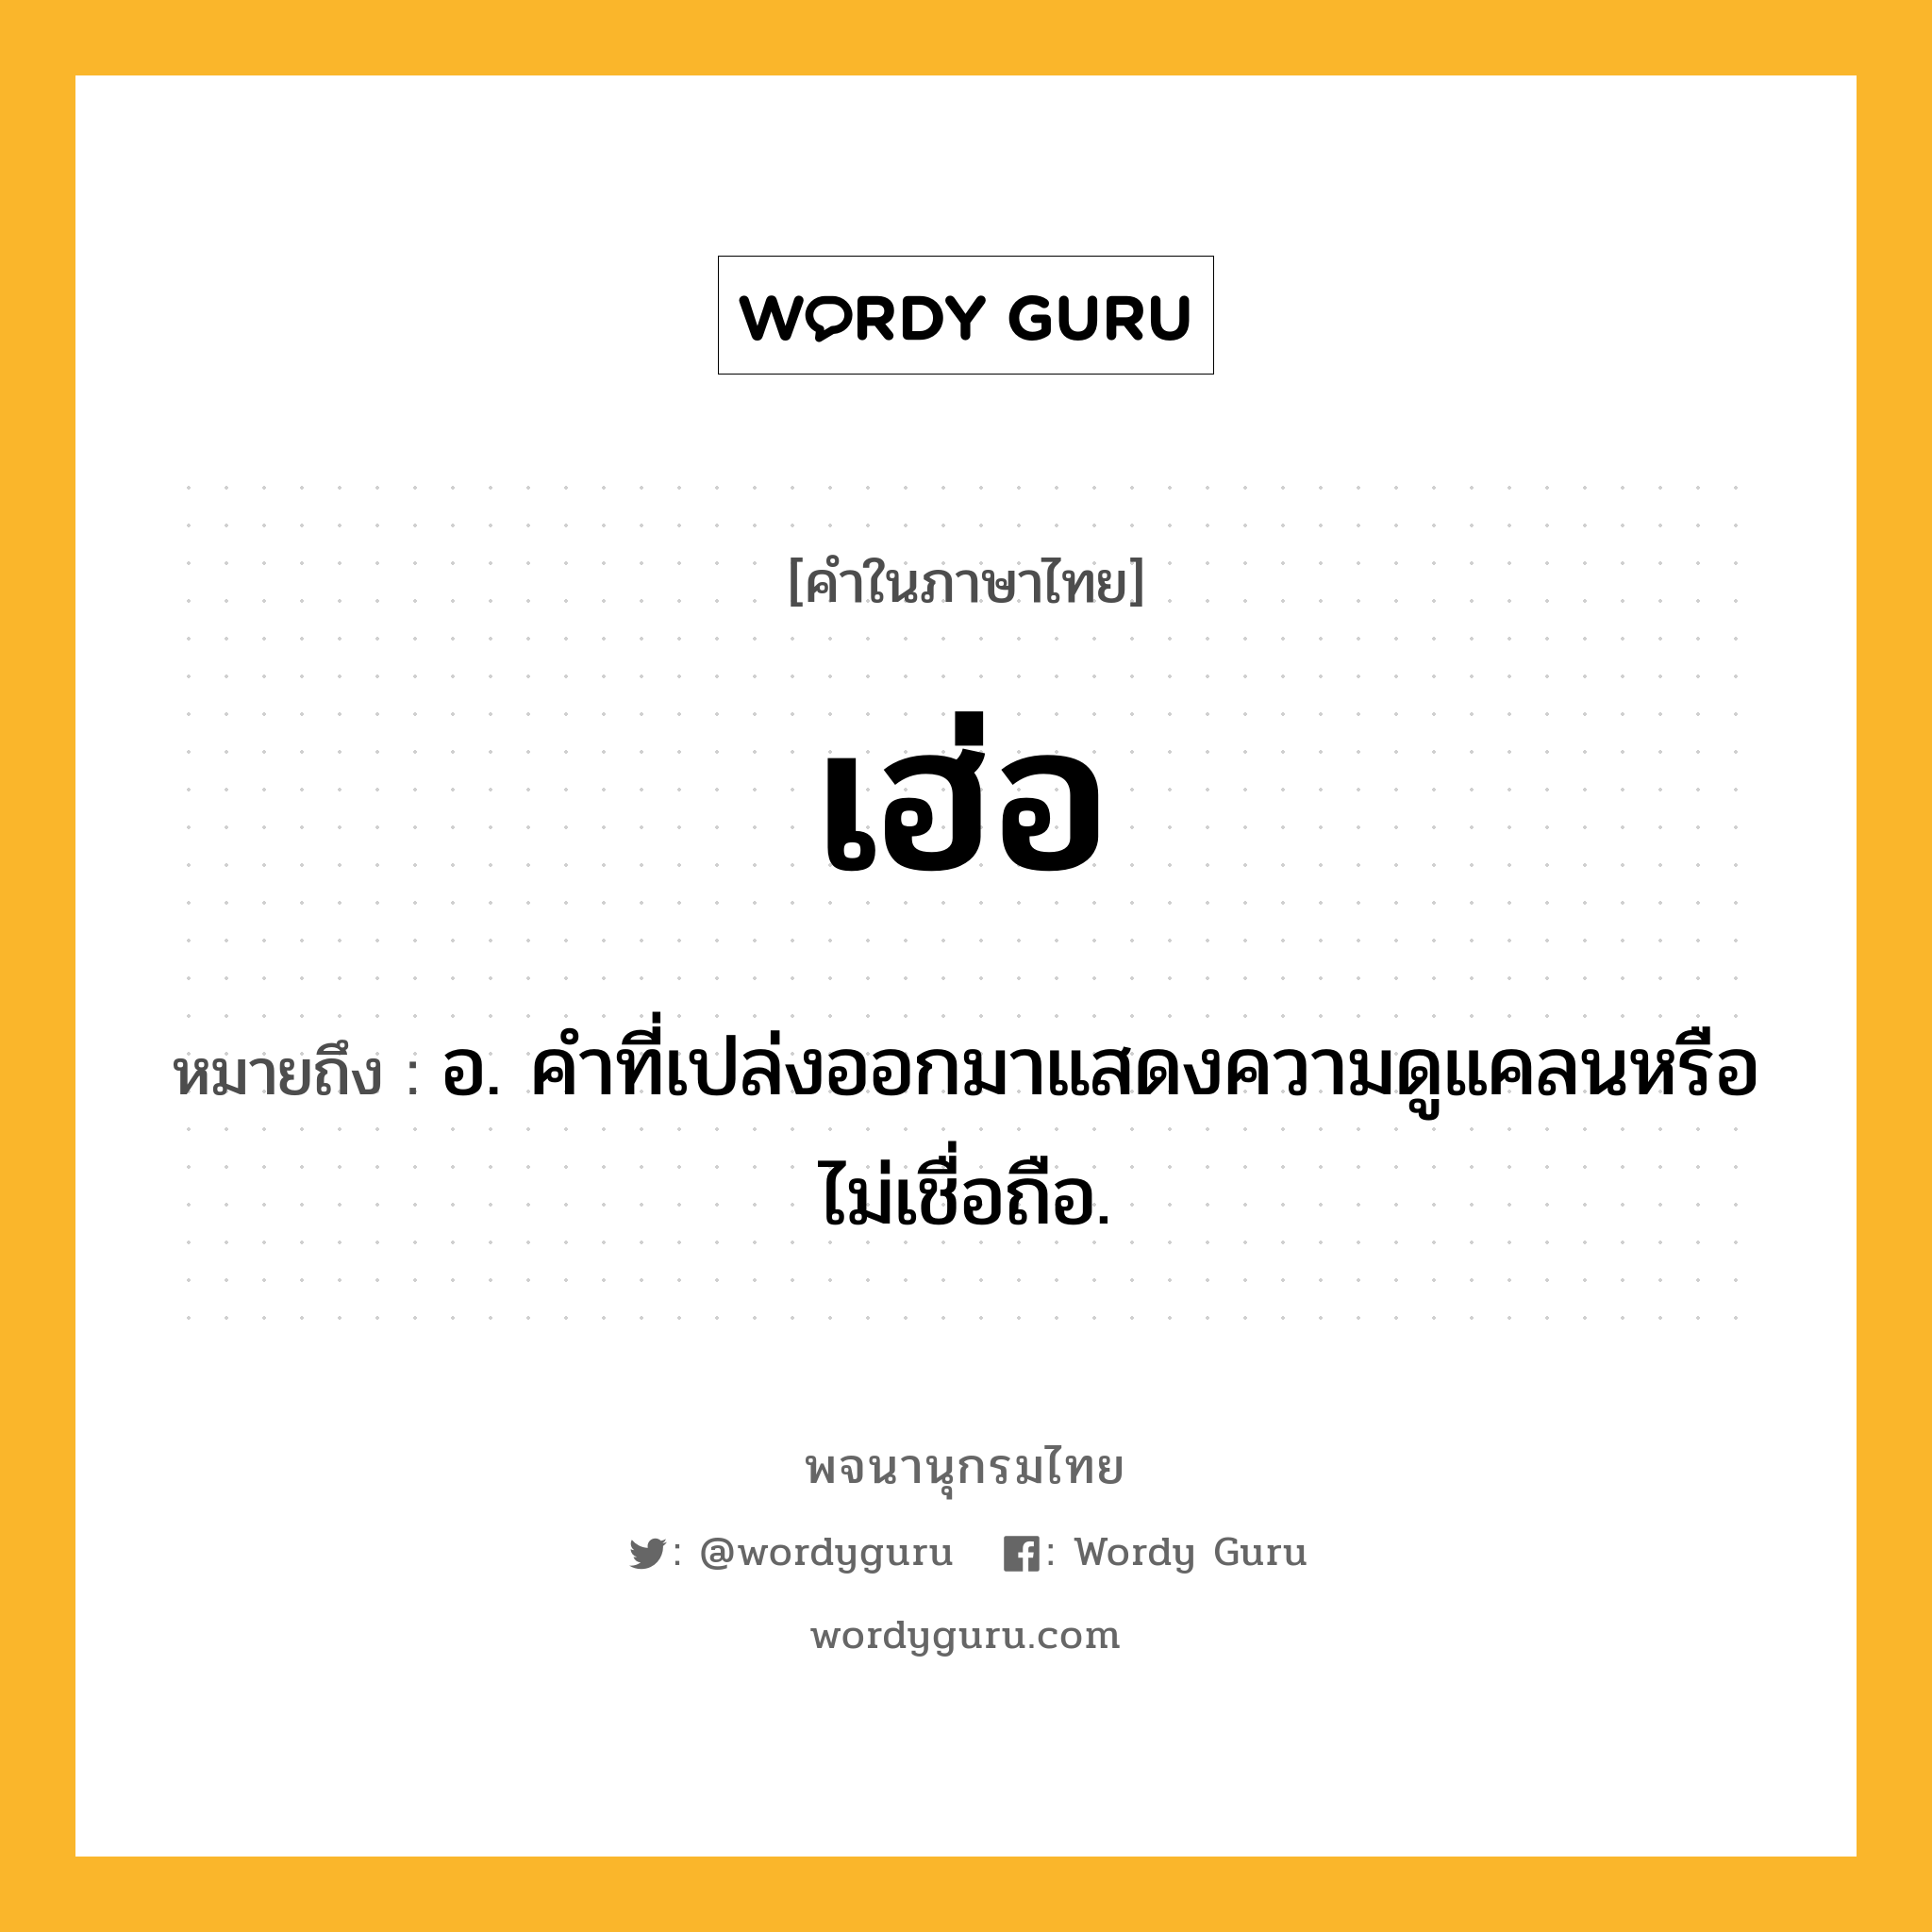 เฮ่อ หมายถึงอะไร?, คำในภาษาไทย เฮ่อ หมายถึง อ. คำที่เปล่งออกมาแสดงความดูแคลนหรือไม่เชื่อถือ.